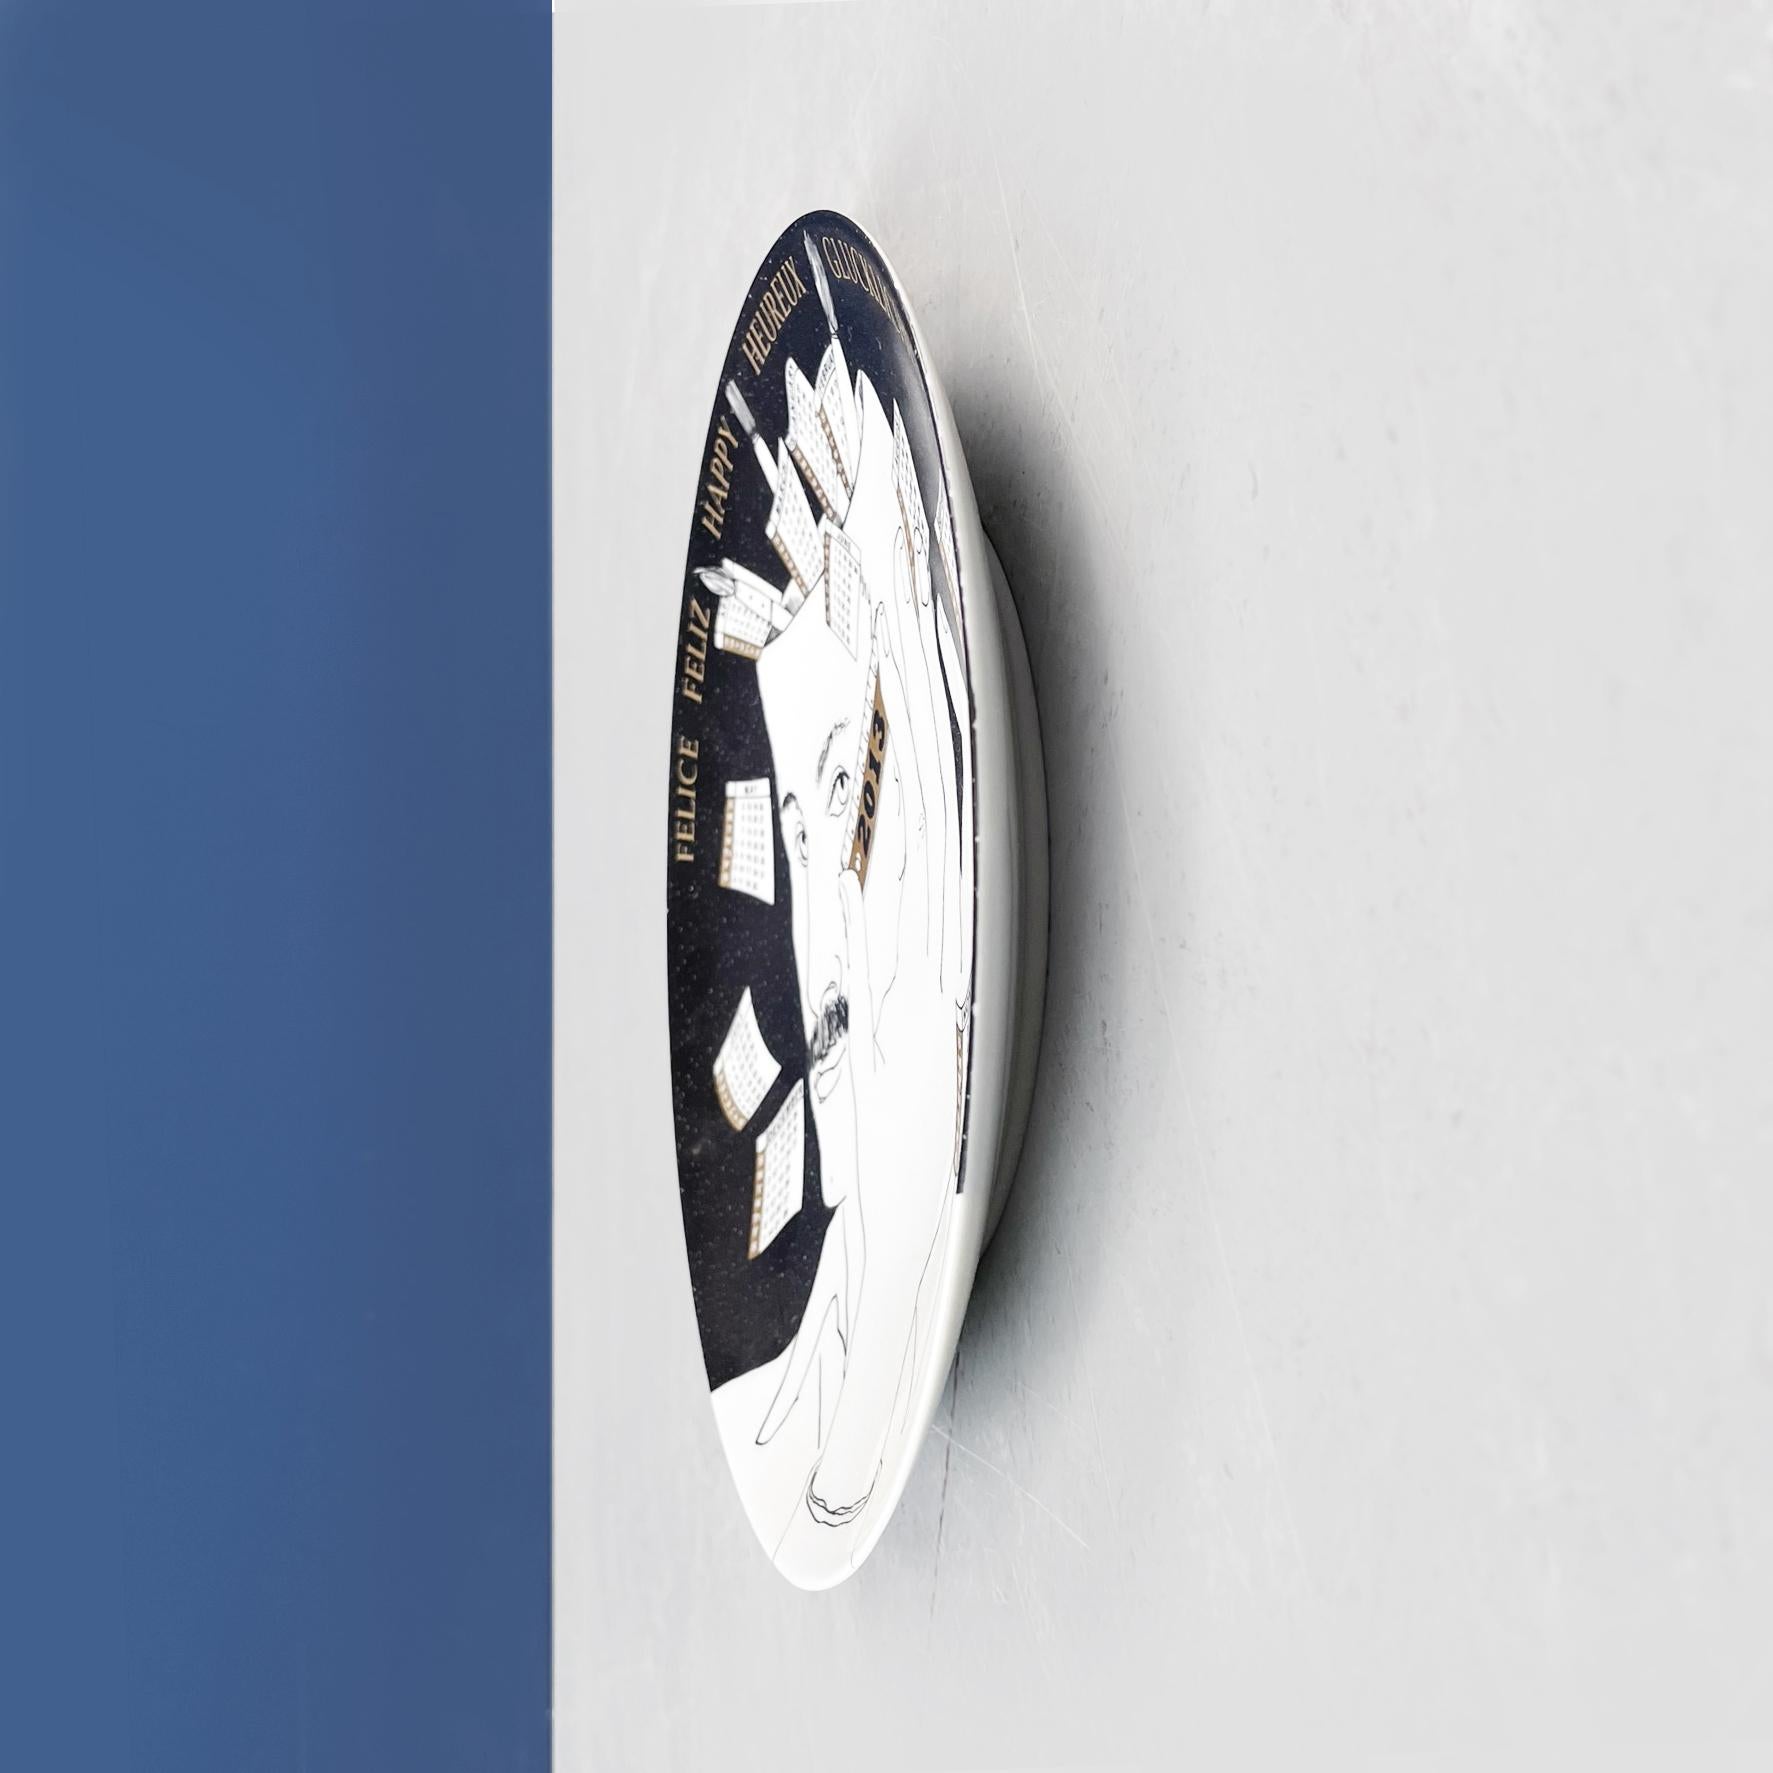 Plaque de calendrier mural en céramique post-moderne italienne 2013 par Fornasetti, 2013.
Plaque de calendrier mural de 2013, édition limitée, en céramique. Il présente un dessin du visage d'un homme avec une règle en noir et blanc avec des inserts